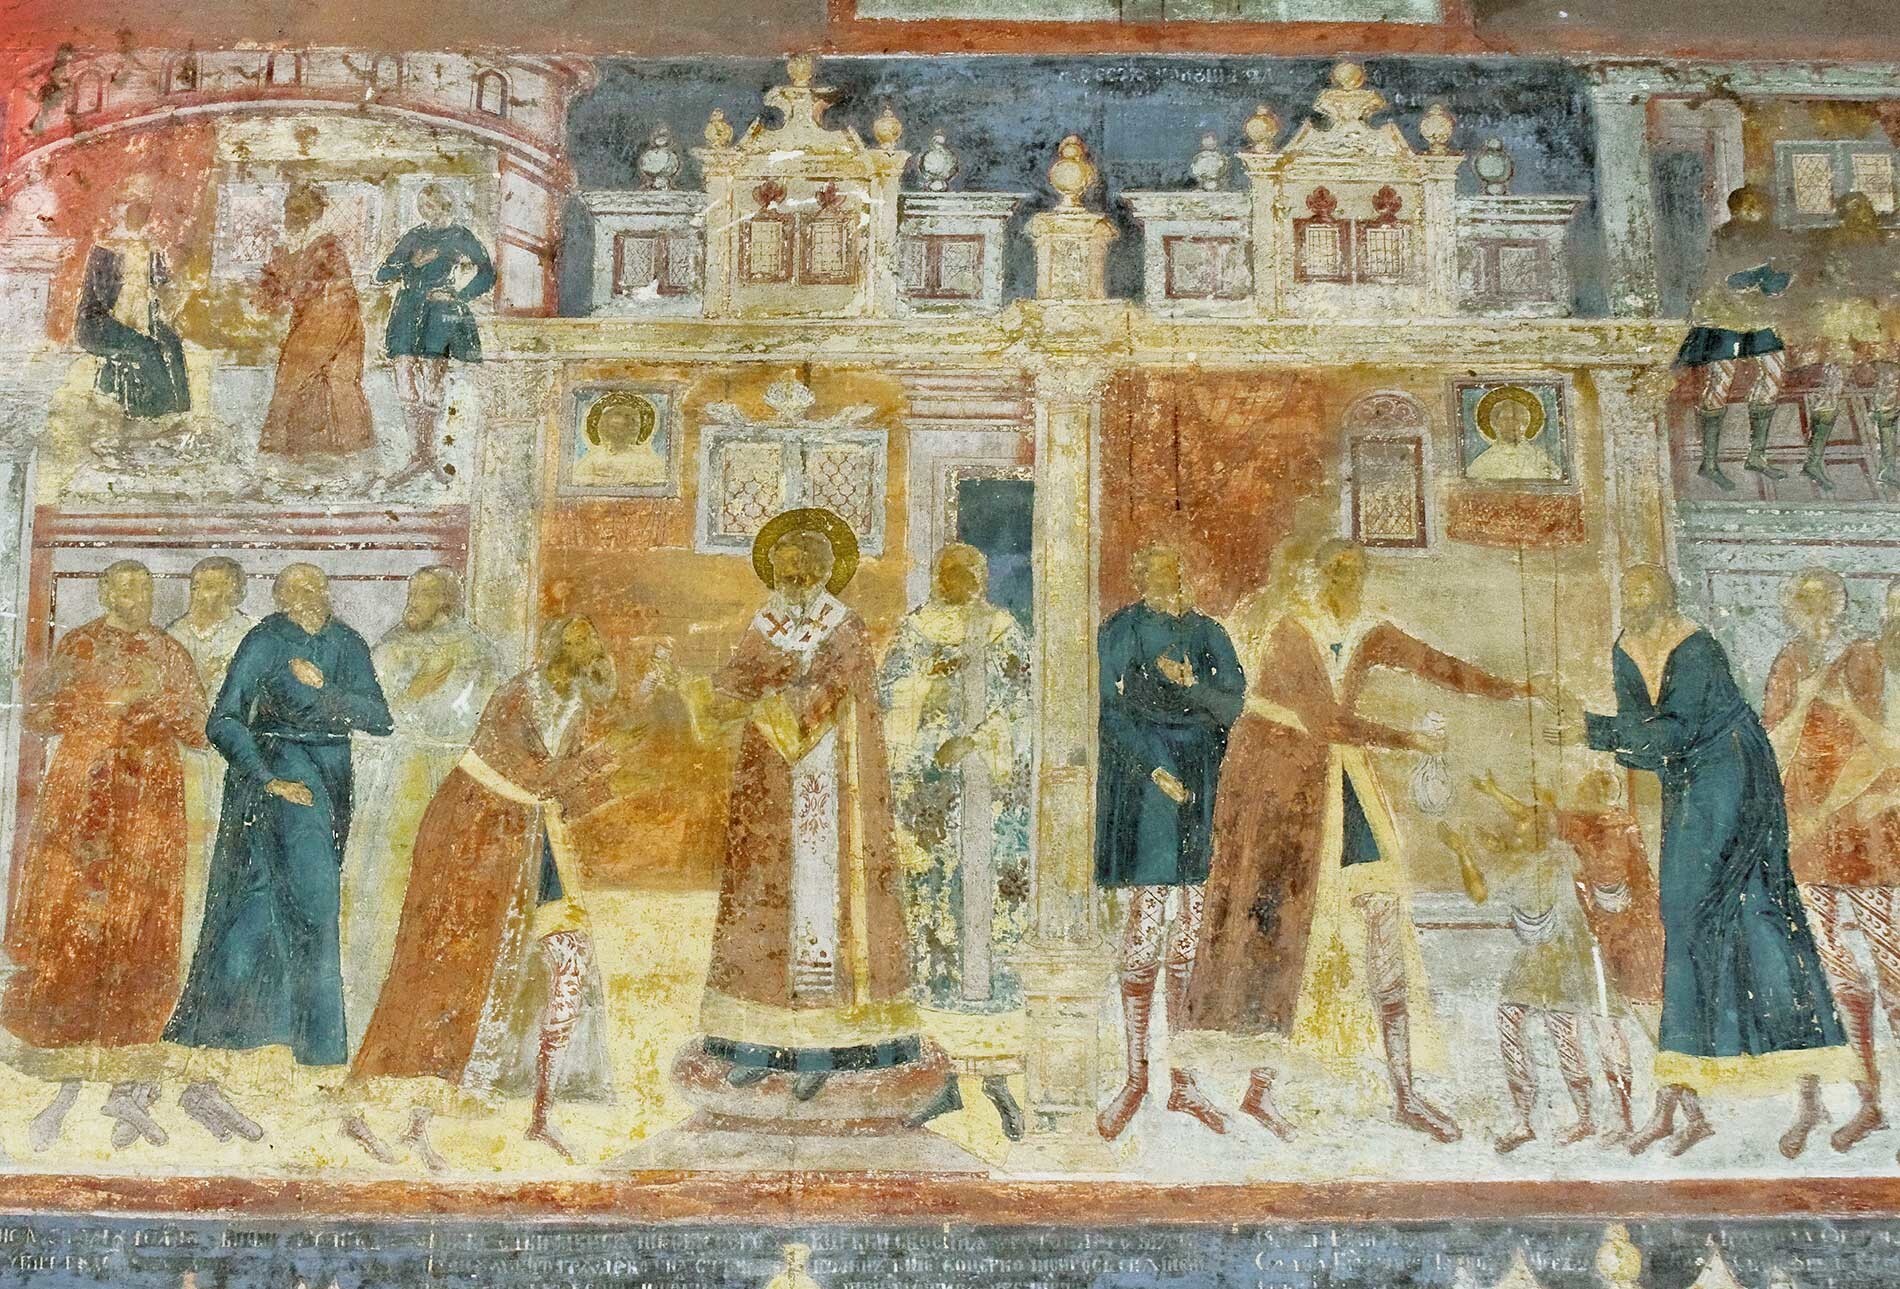 Église Saint-Jean Chrysostome de Korovniki. Les fresques du mur nord montrent saint Jean Chrysostome donnant de l'argent à son trésorier pour qu'il soit distribué en aumône aux nécessiteux de Constantinople. 15 août 2017.